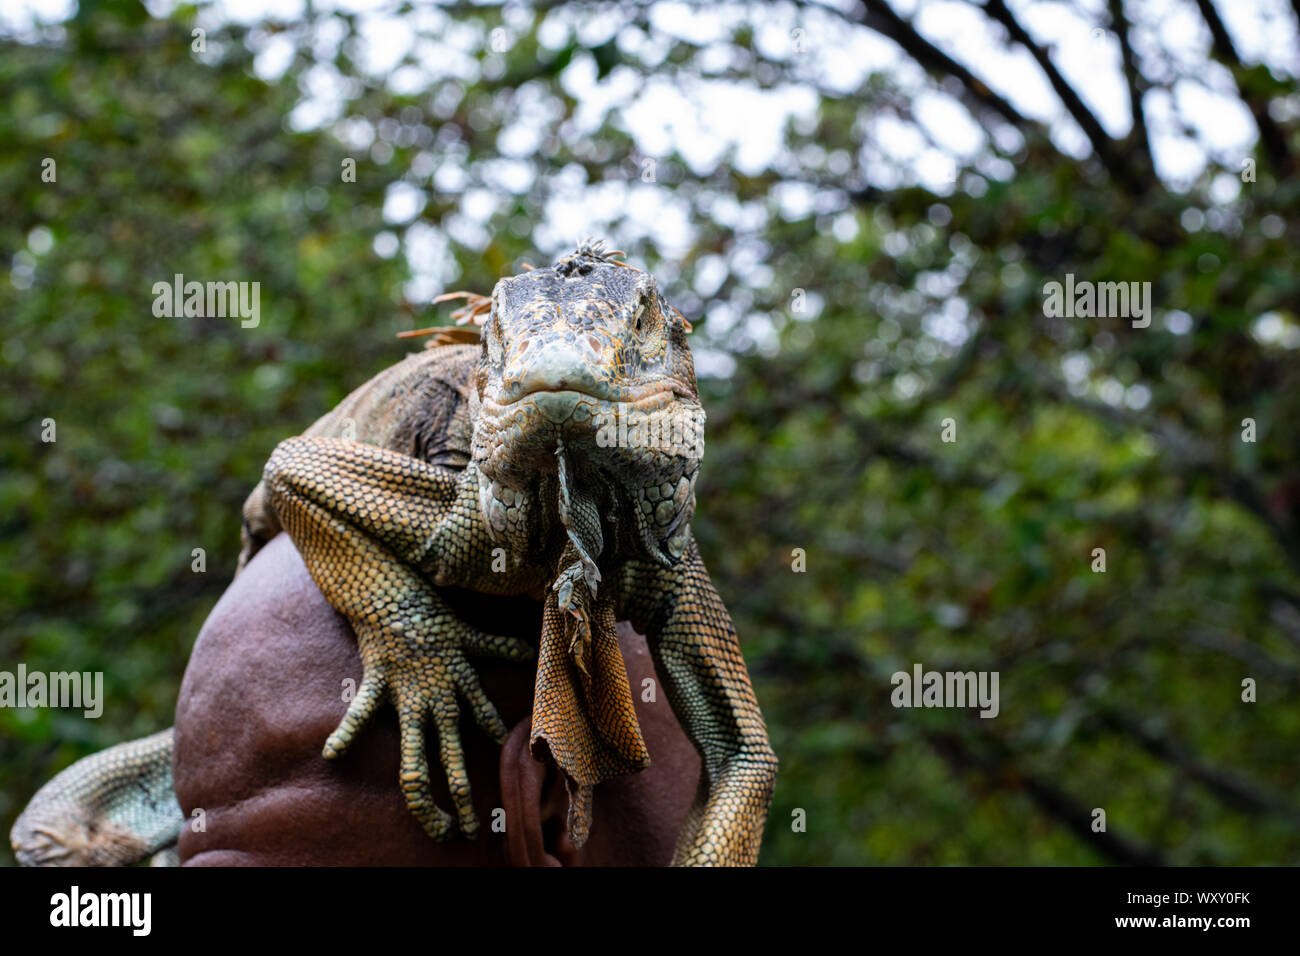 Ein Mann hat sich einen Leguan auf seinen Kopf gelegt und damit posiert vor der Kamera Foto de stock